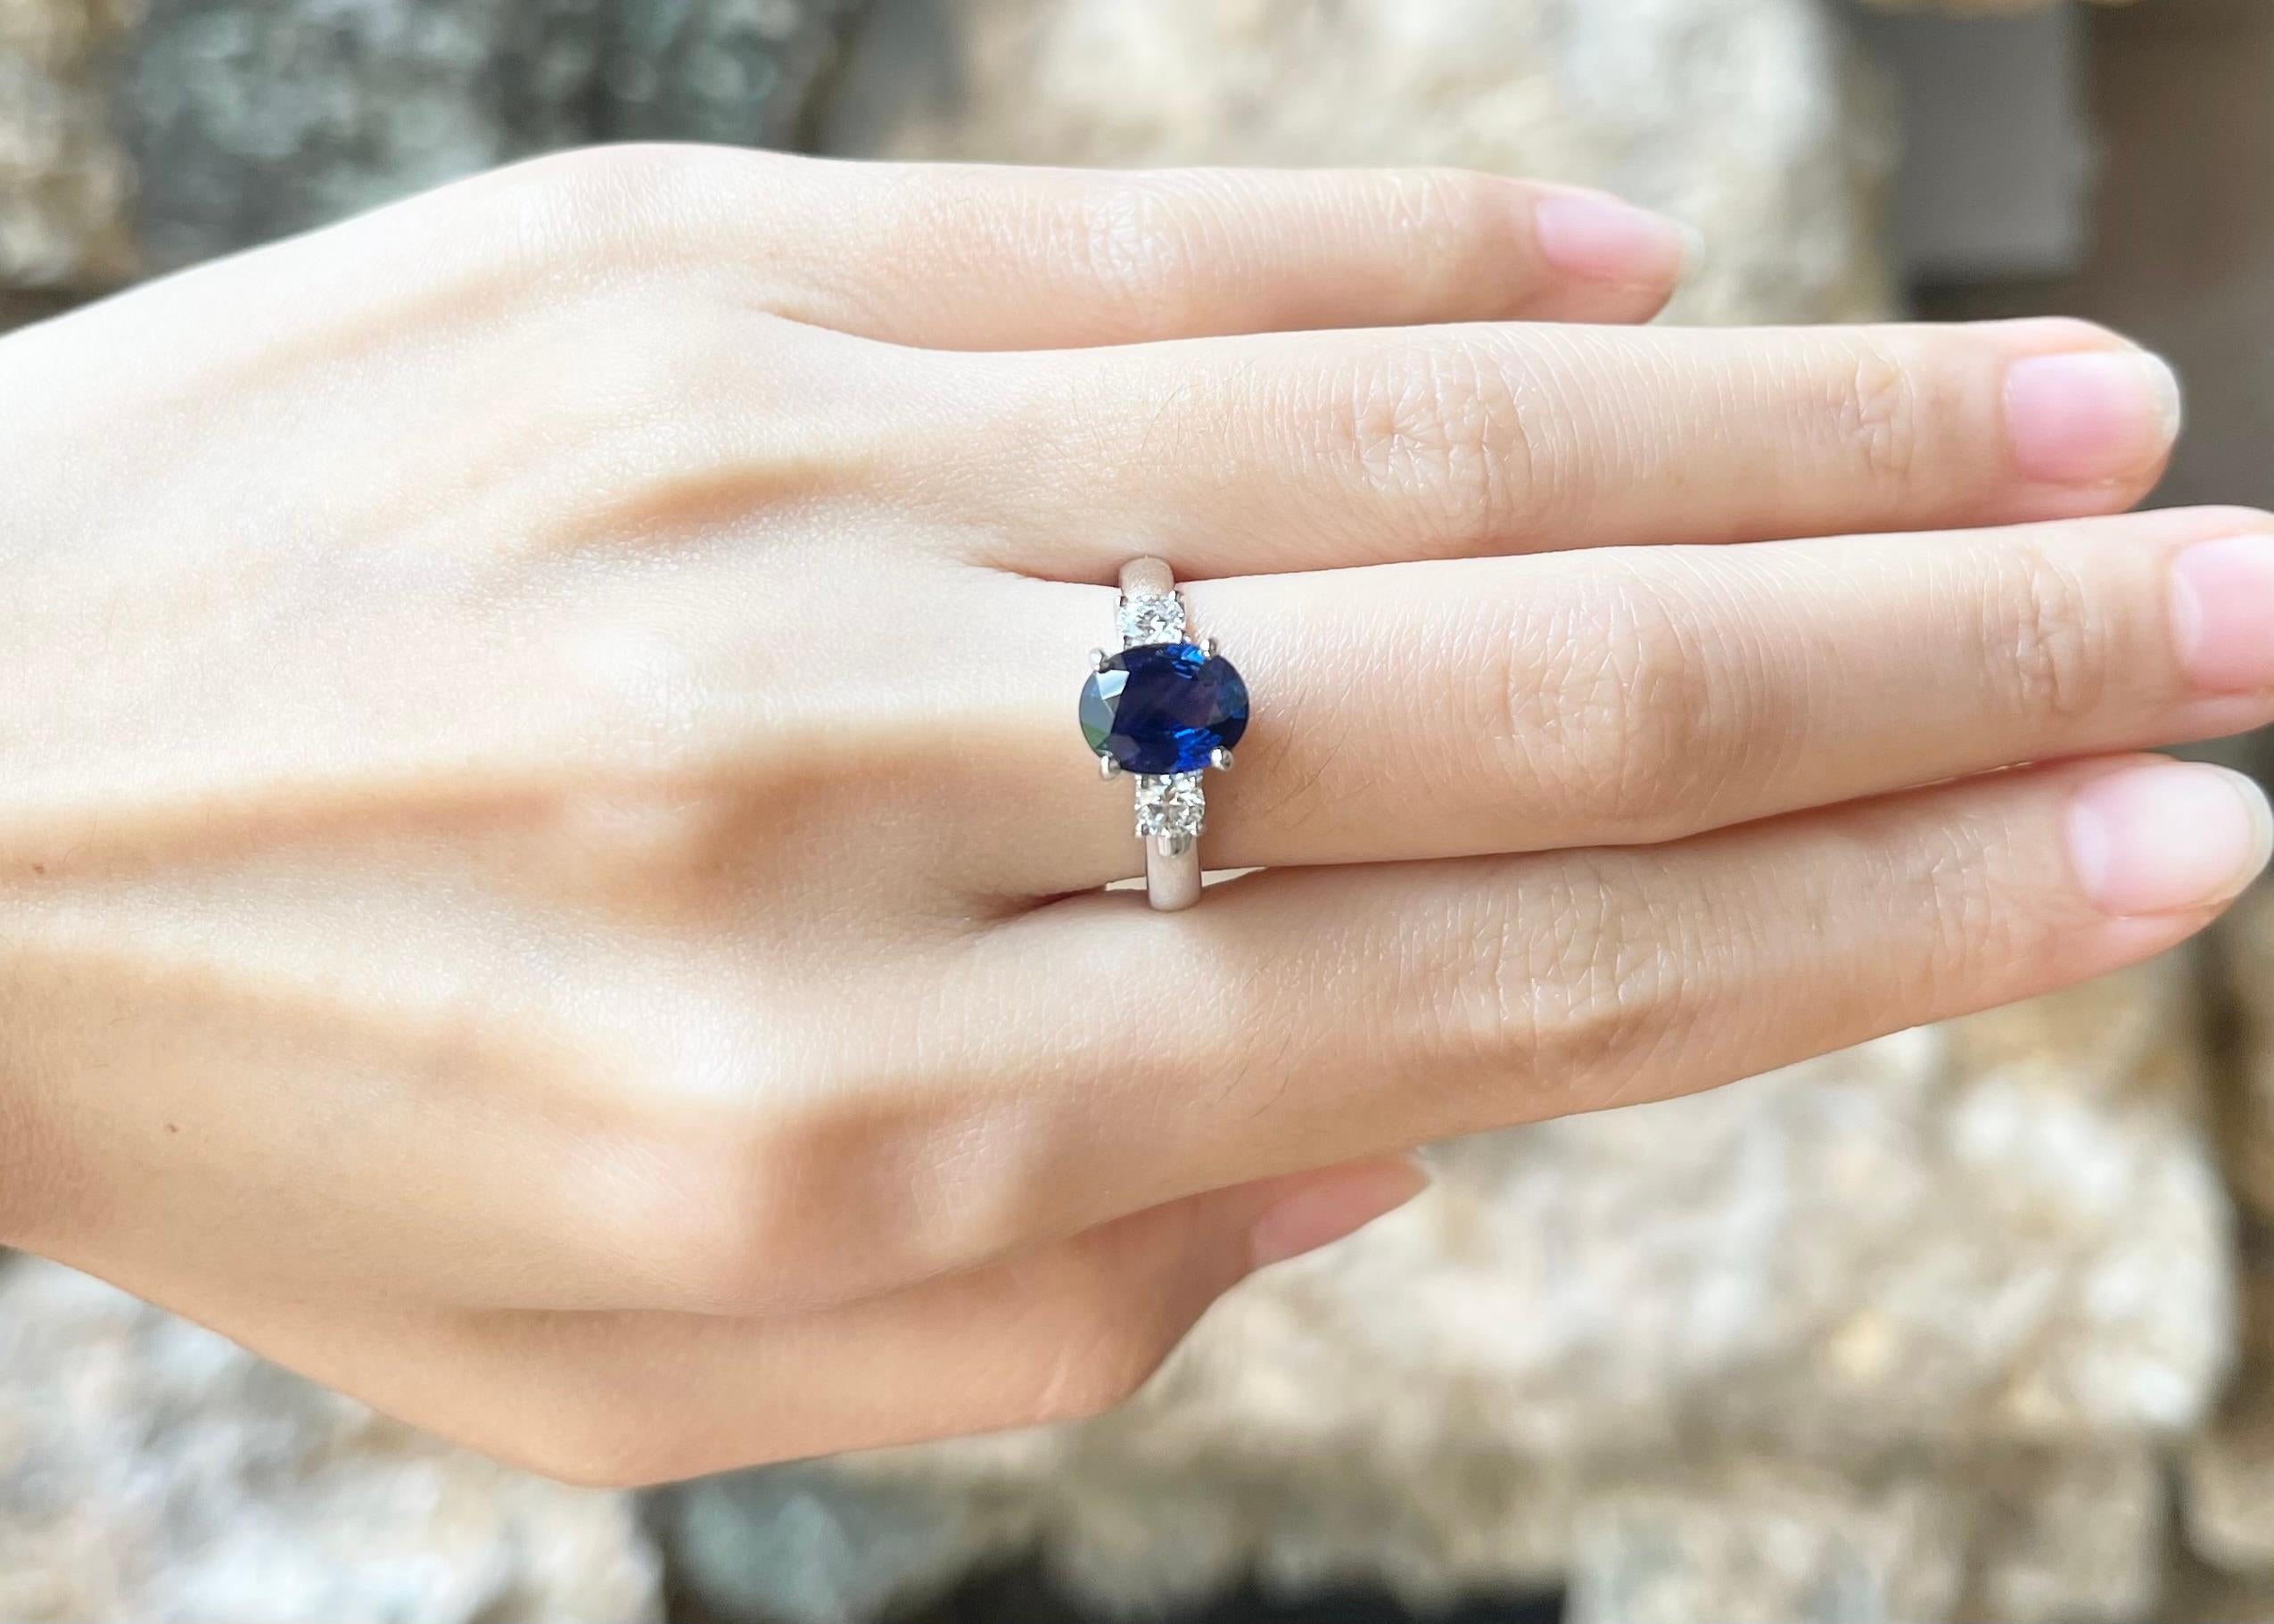 Bague saphir bleu 2,50 carats et diamant 0,41 carat en platine 950
(Certifié GIA)

Largeur :  1,2 cm 
Longueur : 0,9 cm
Taille de l'anneau : 53
Poids total : 6,92 grammes

Saphir bleu 
Largeur :  0,6 cm 
Longueur : 0,9 cm

